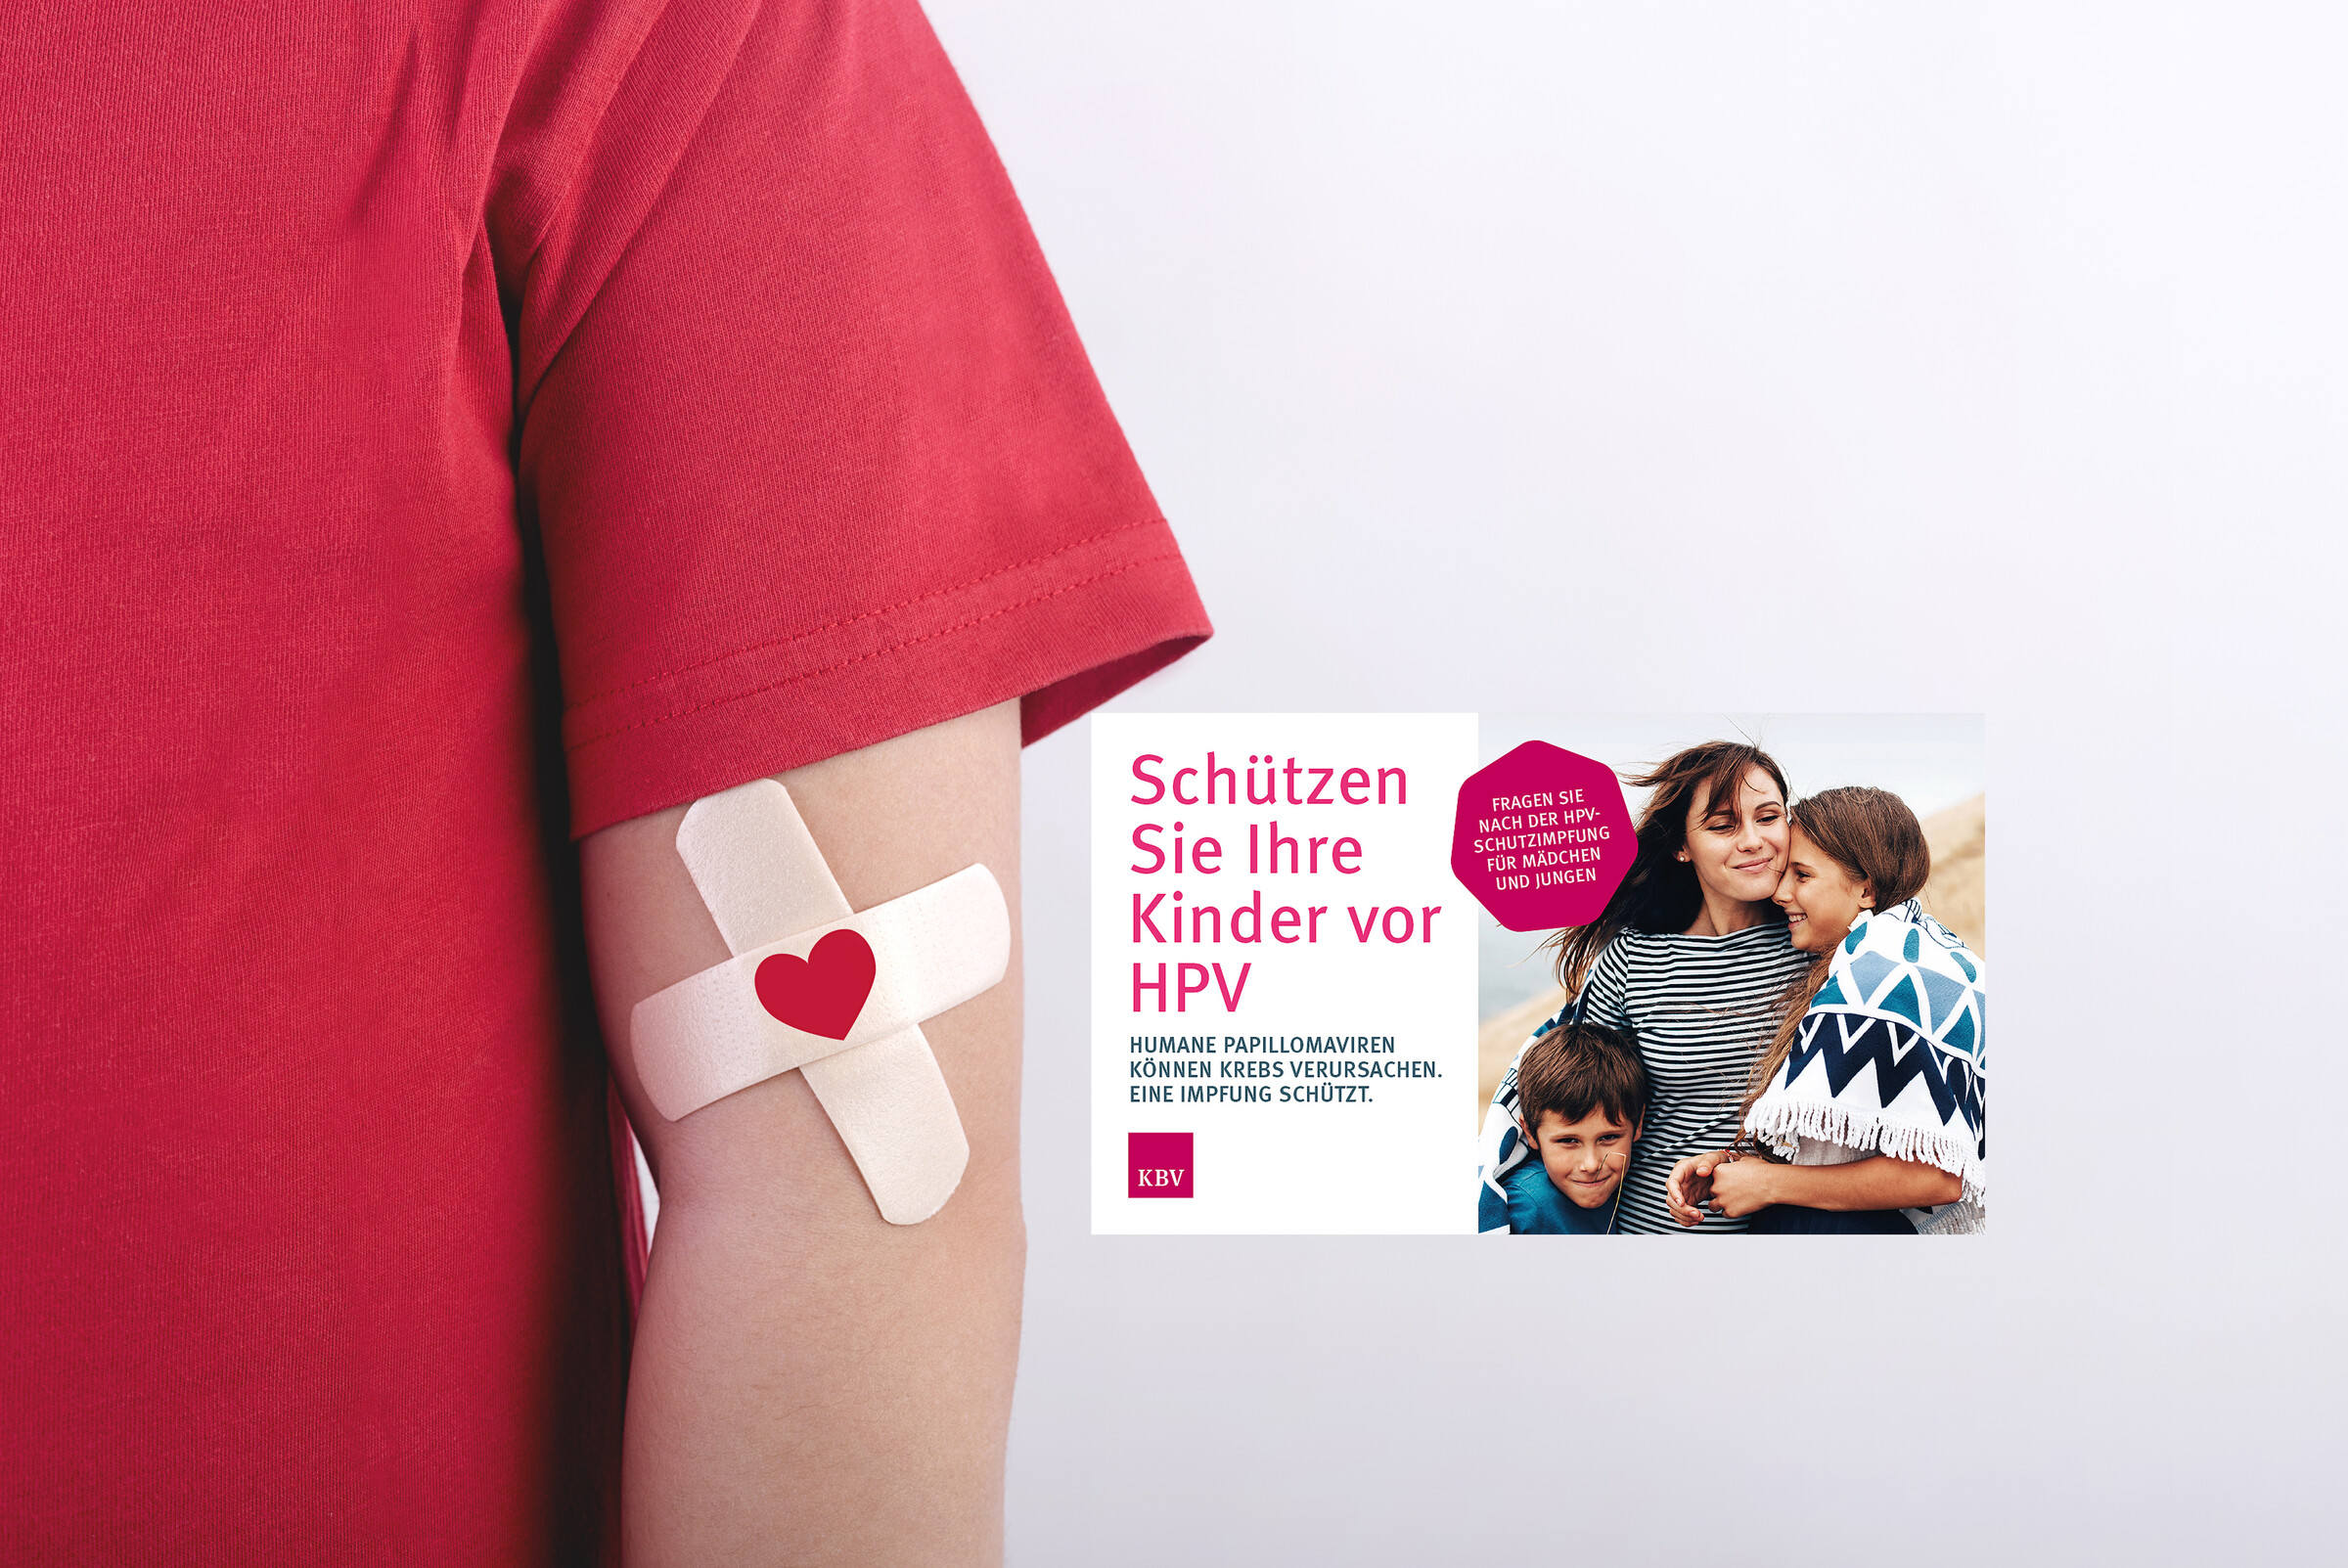 En Kinderarm mit Pflaster, darauf ist ein Herz zu sehen. Daneben ist das  KBV-Plakat für die HPV-Schutzimpfung zu sehen.